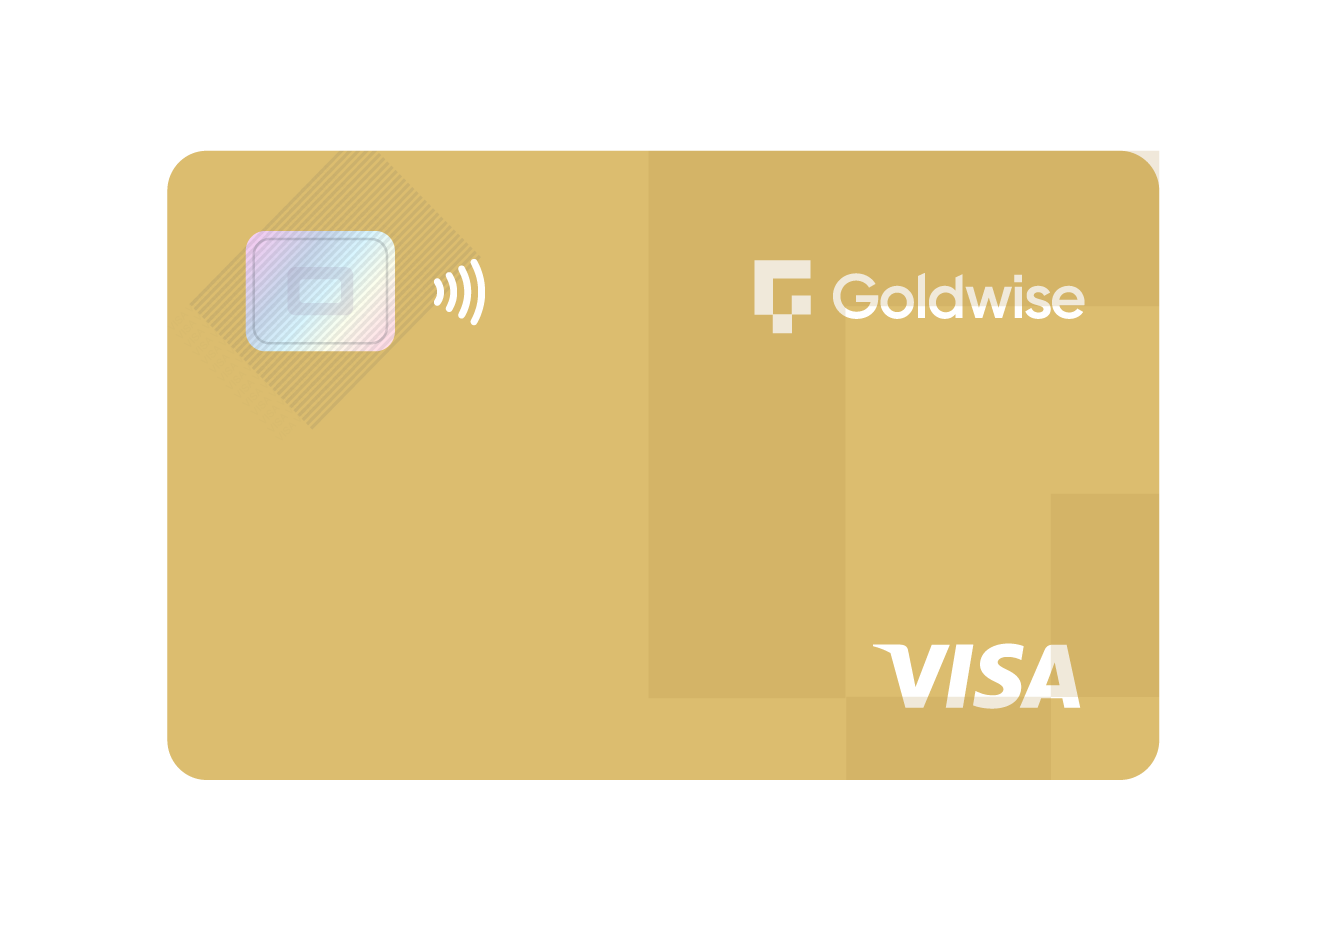 Goldwise Card Image